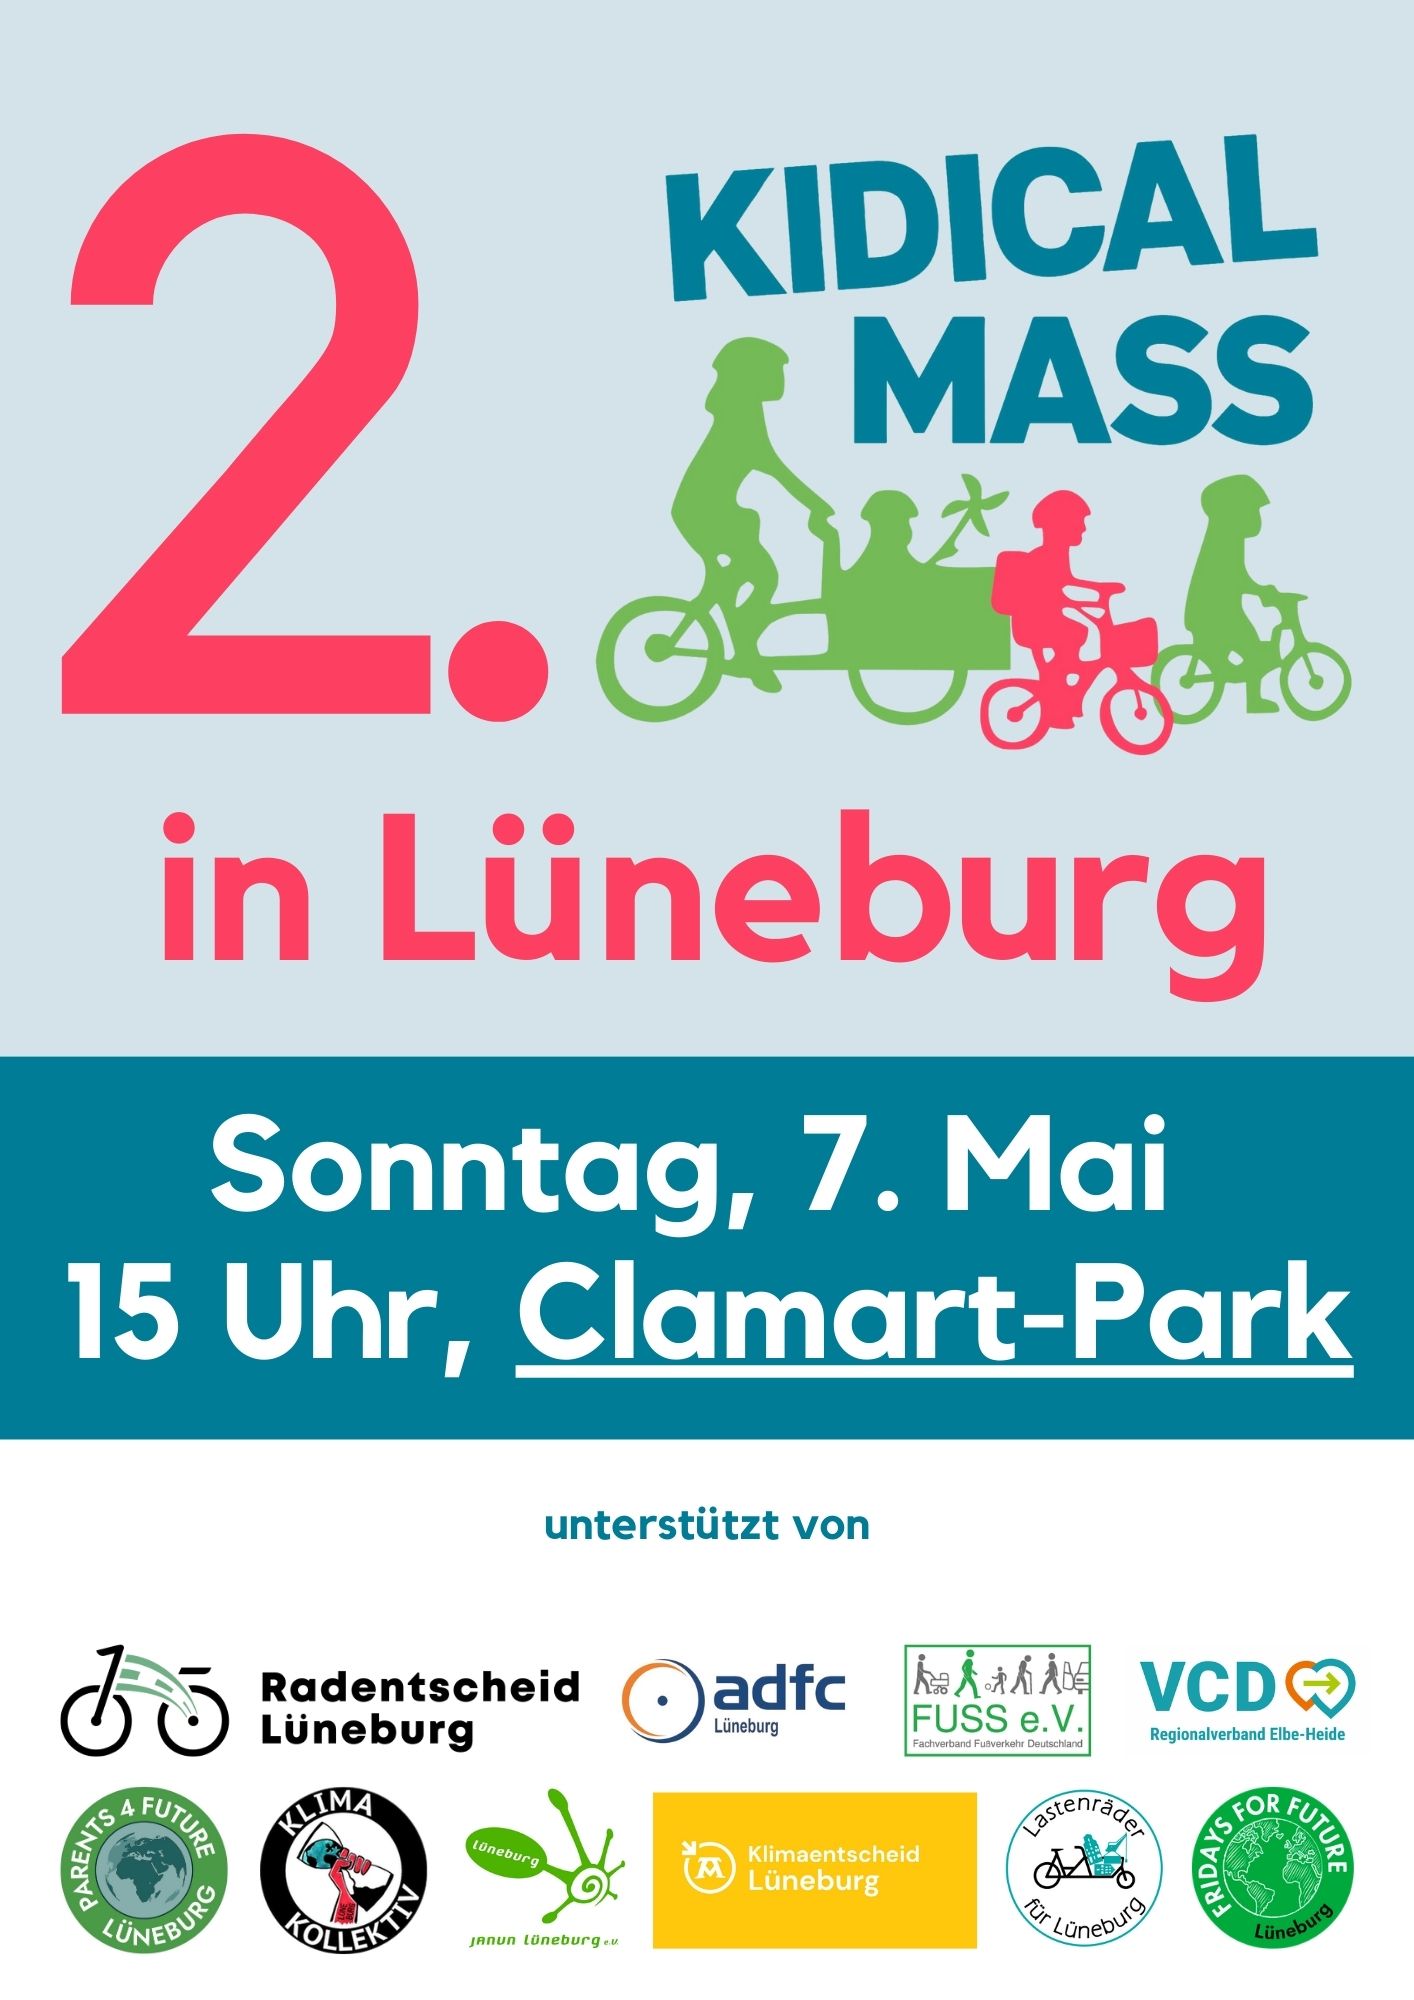 You are currently viewing 2. Kidical Mass in Lüneburg – Vorfahrt für Fahrrad-Kids